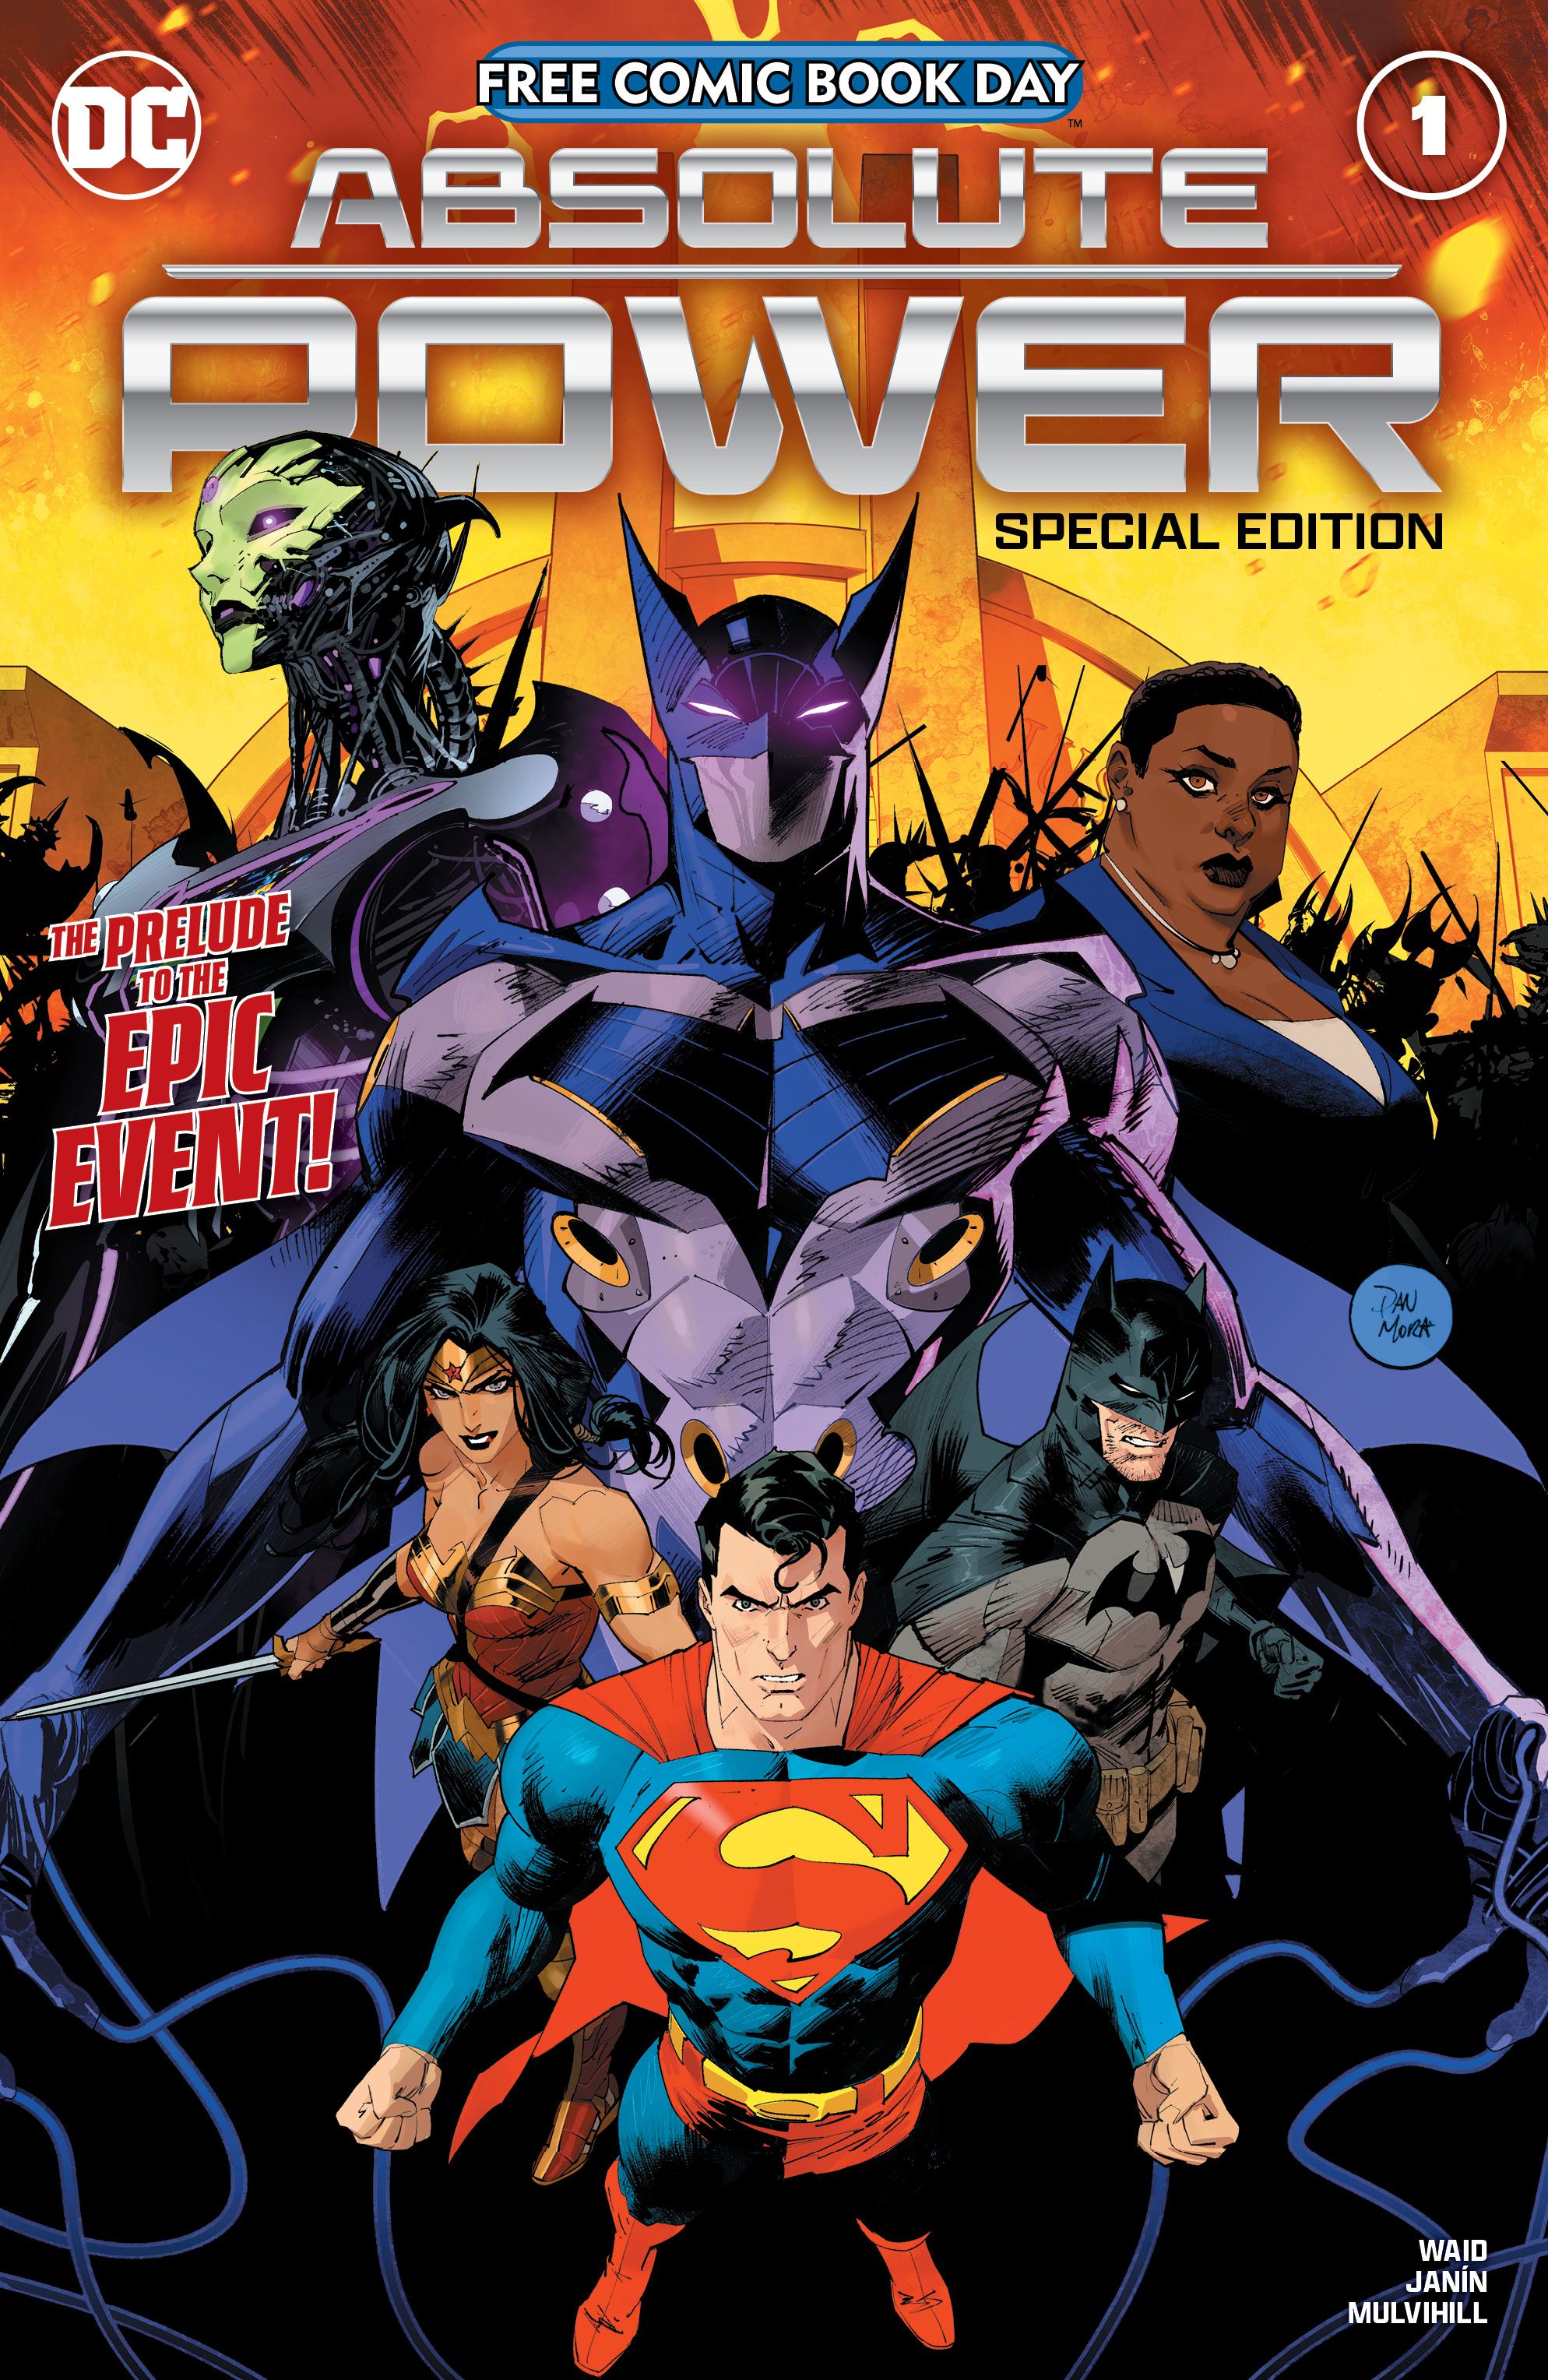 Capa principal do Absolute Power FCBD: Superman, Mulher Maravilha e Batman posam na frente de Brainiac Queen, Failsafe e Amanda Waller.